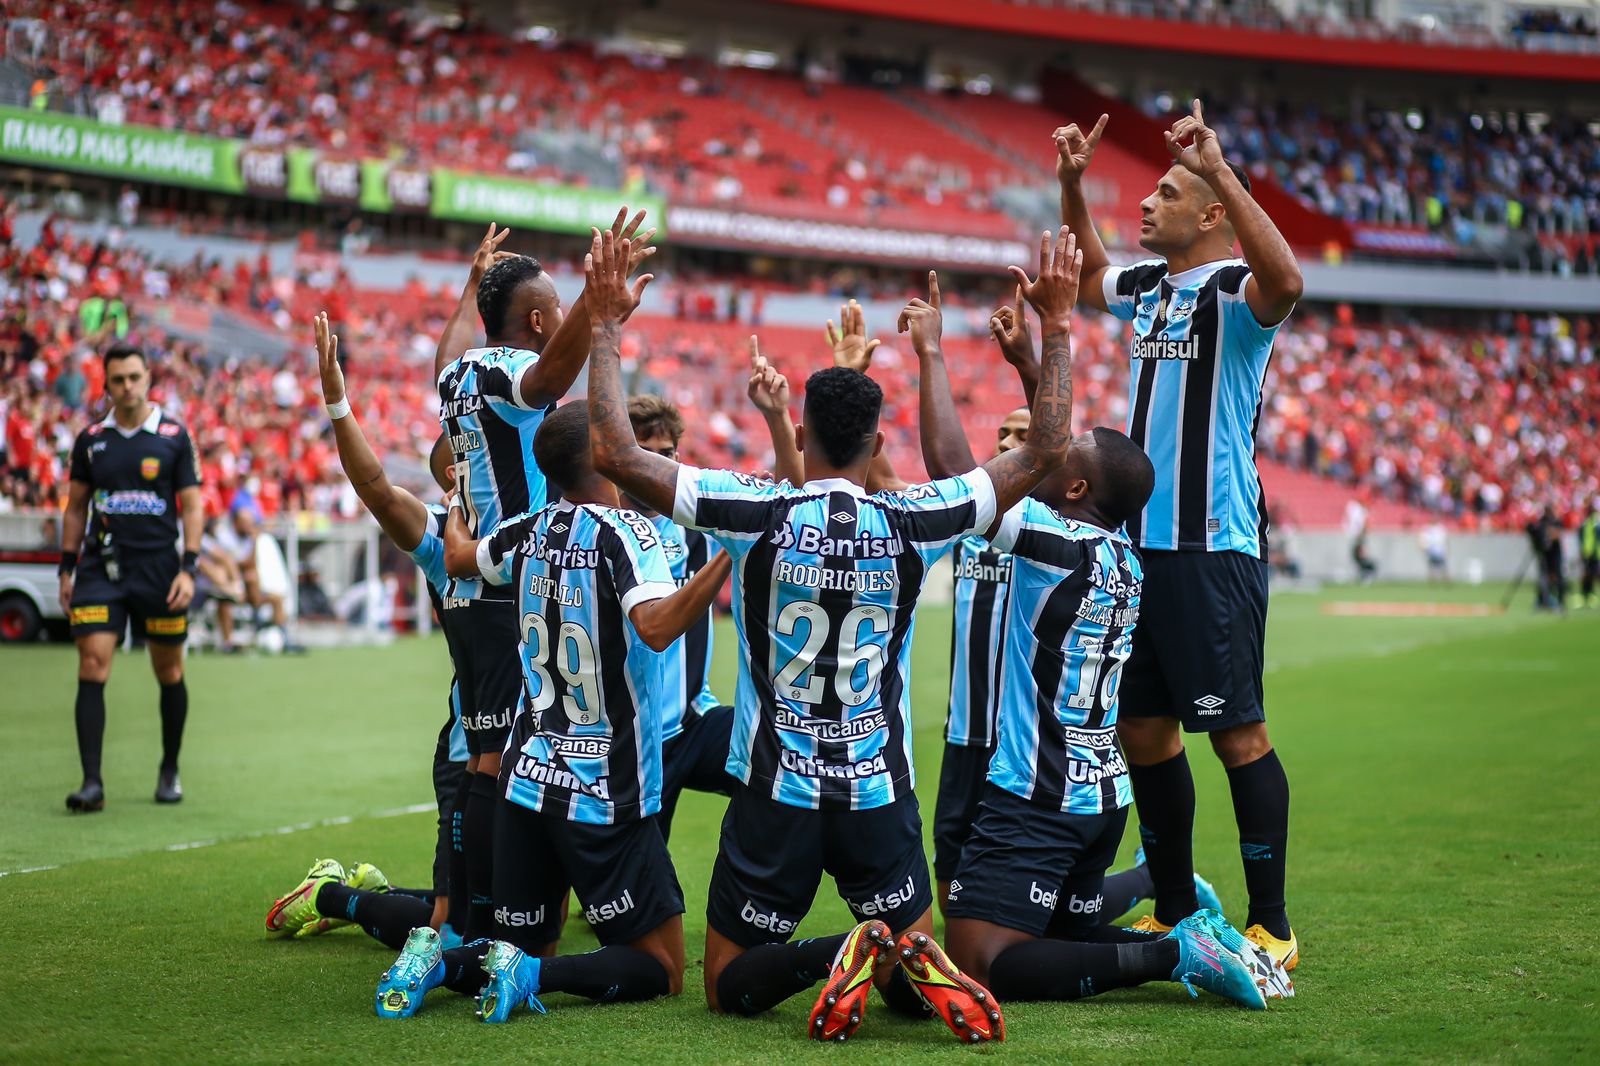 Qual foi o resultado do Grêmio hoje no jogo?